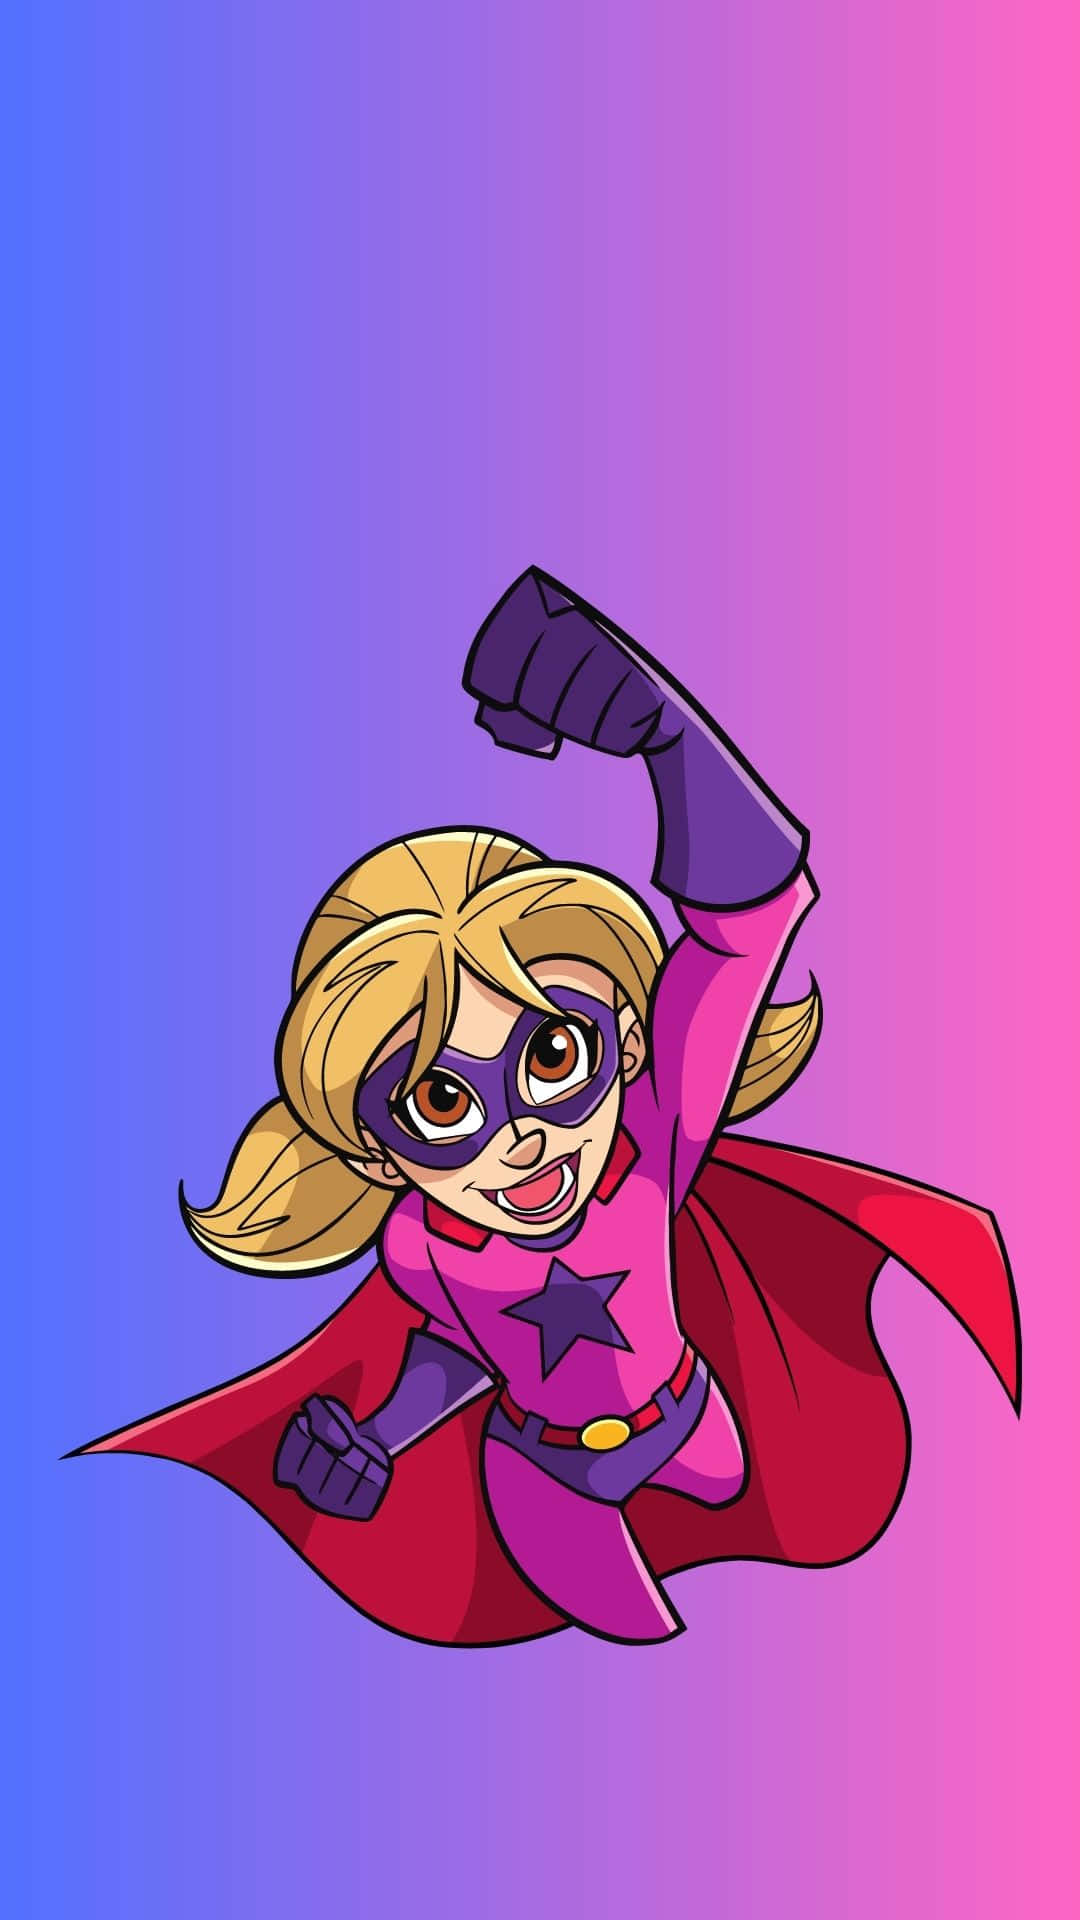 ]Superhelt i Pink og lilla dragt baggrund.